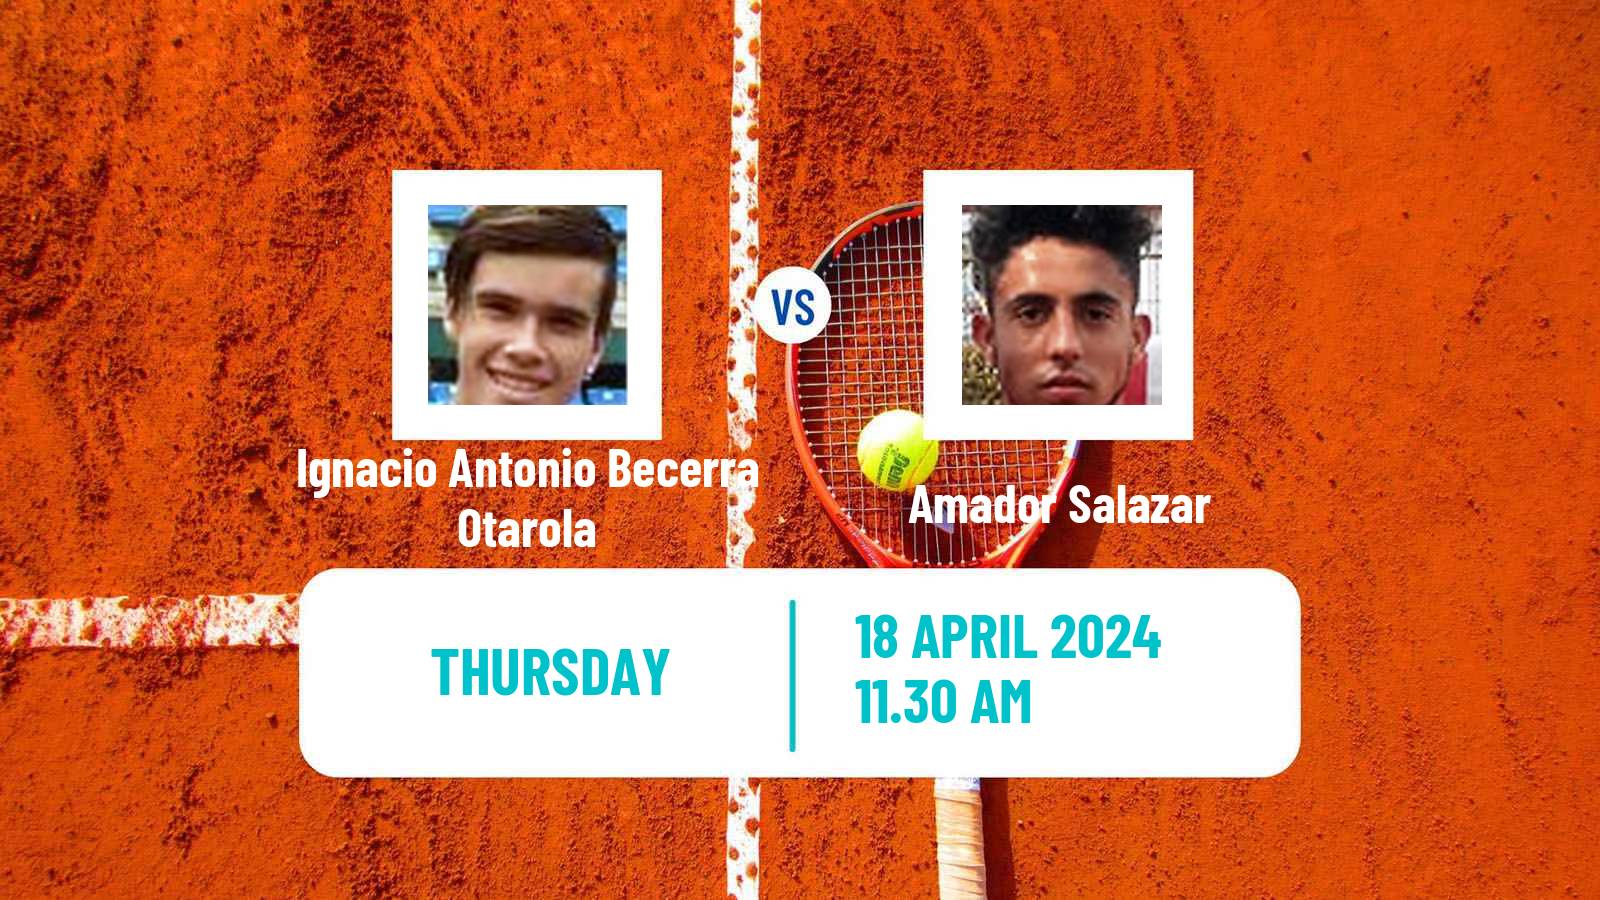 Tennis ITF M15 Santiago Men Ignacio Antonio Becerra Otarola - Amador Salazar